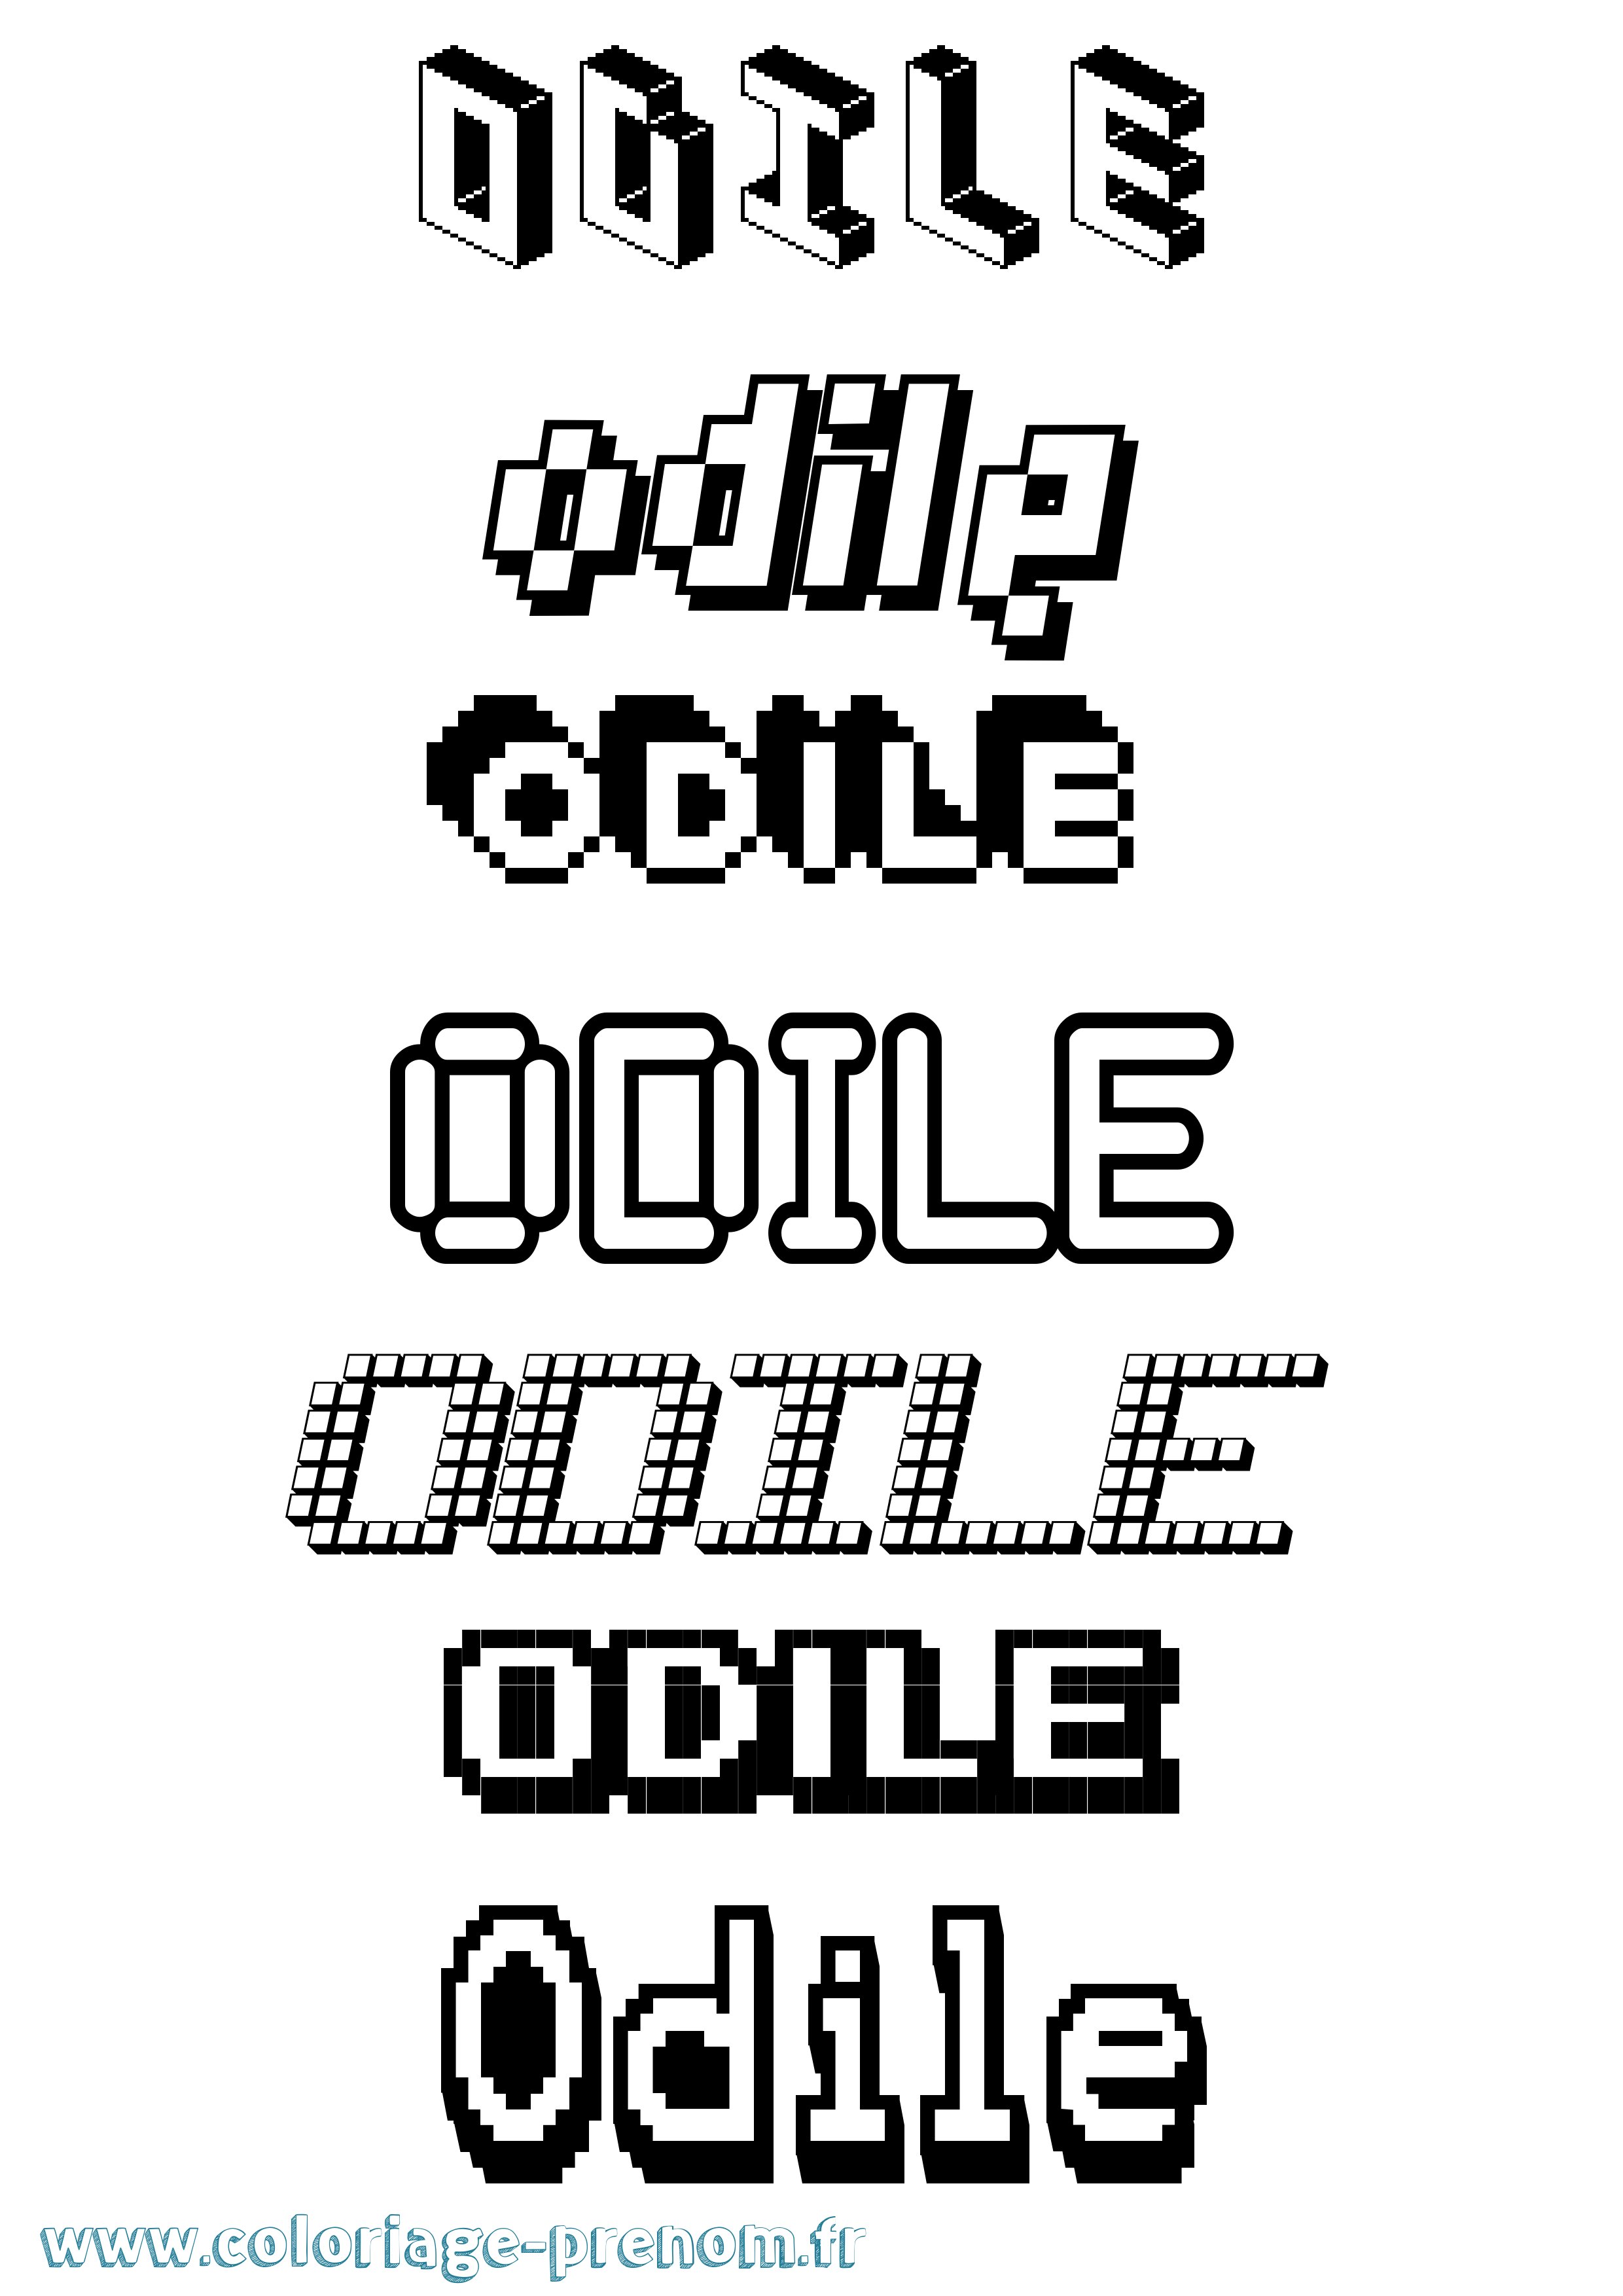 Coloriage prénom Odile Pixel